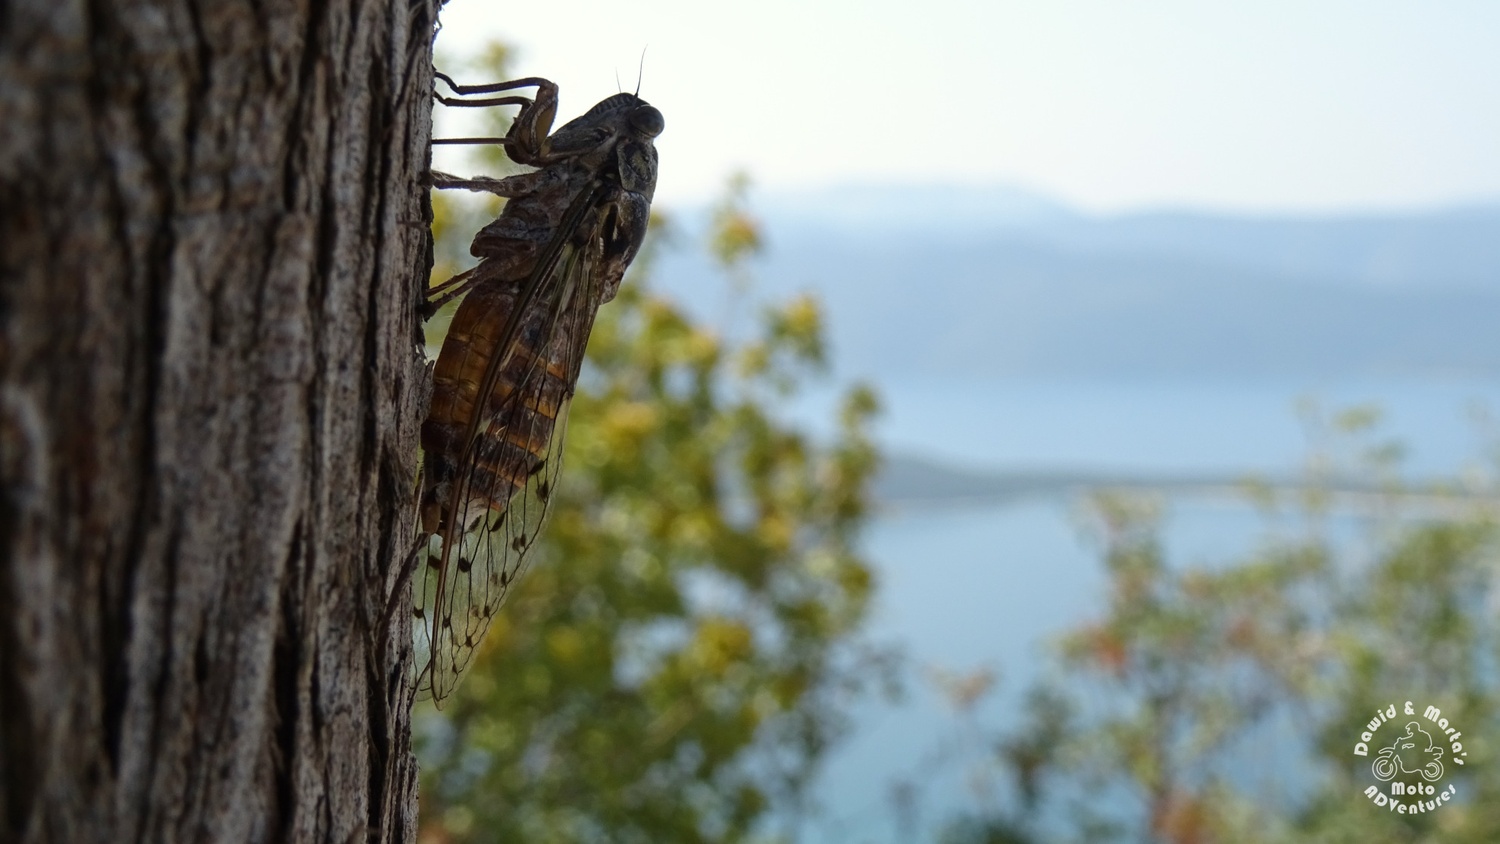 Croatian Cicada